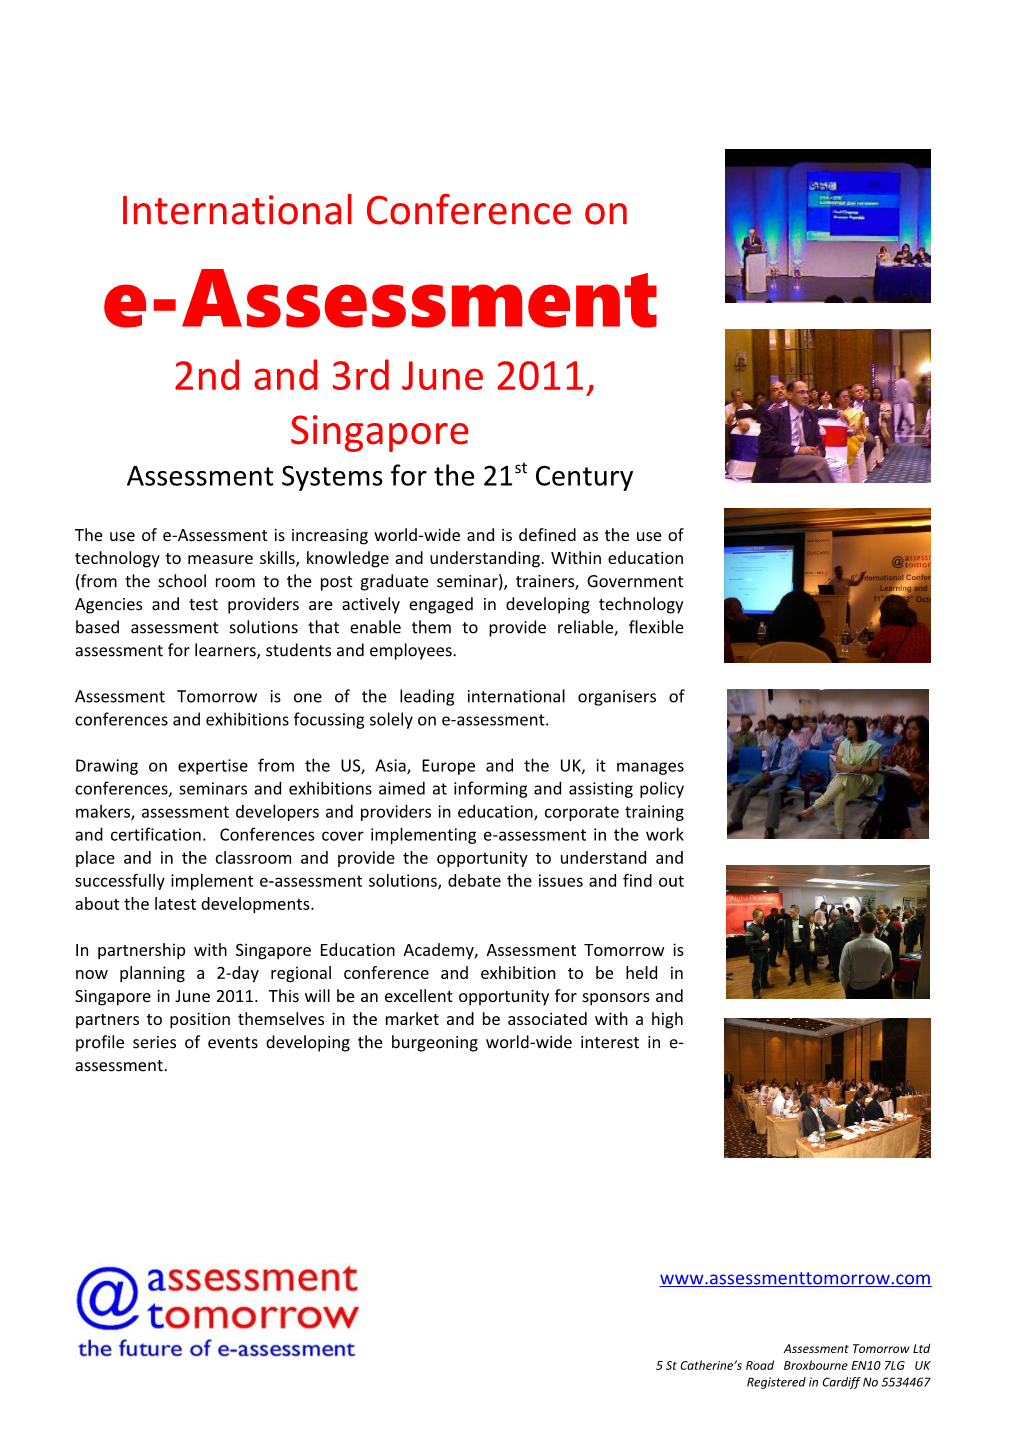 Showcasing E-Assessment Opportunities Worldwide